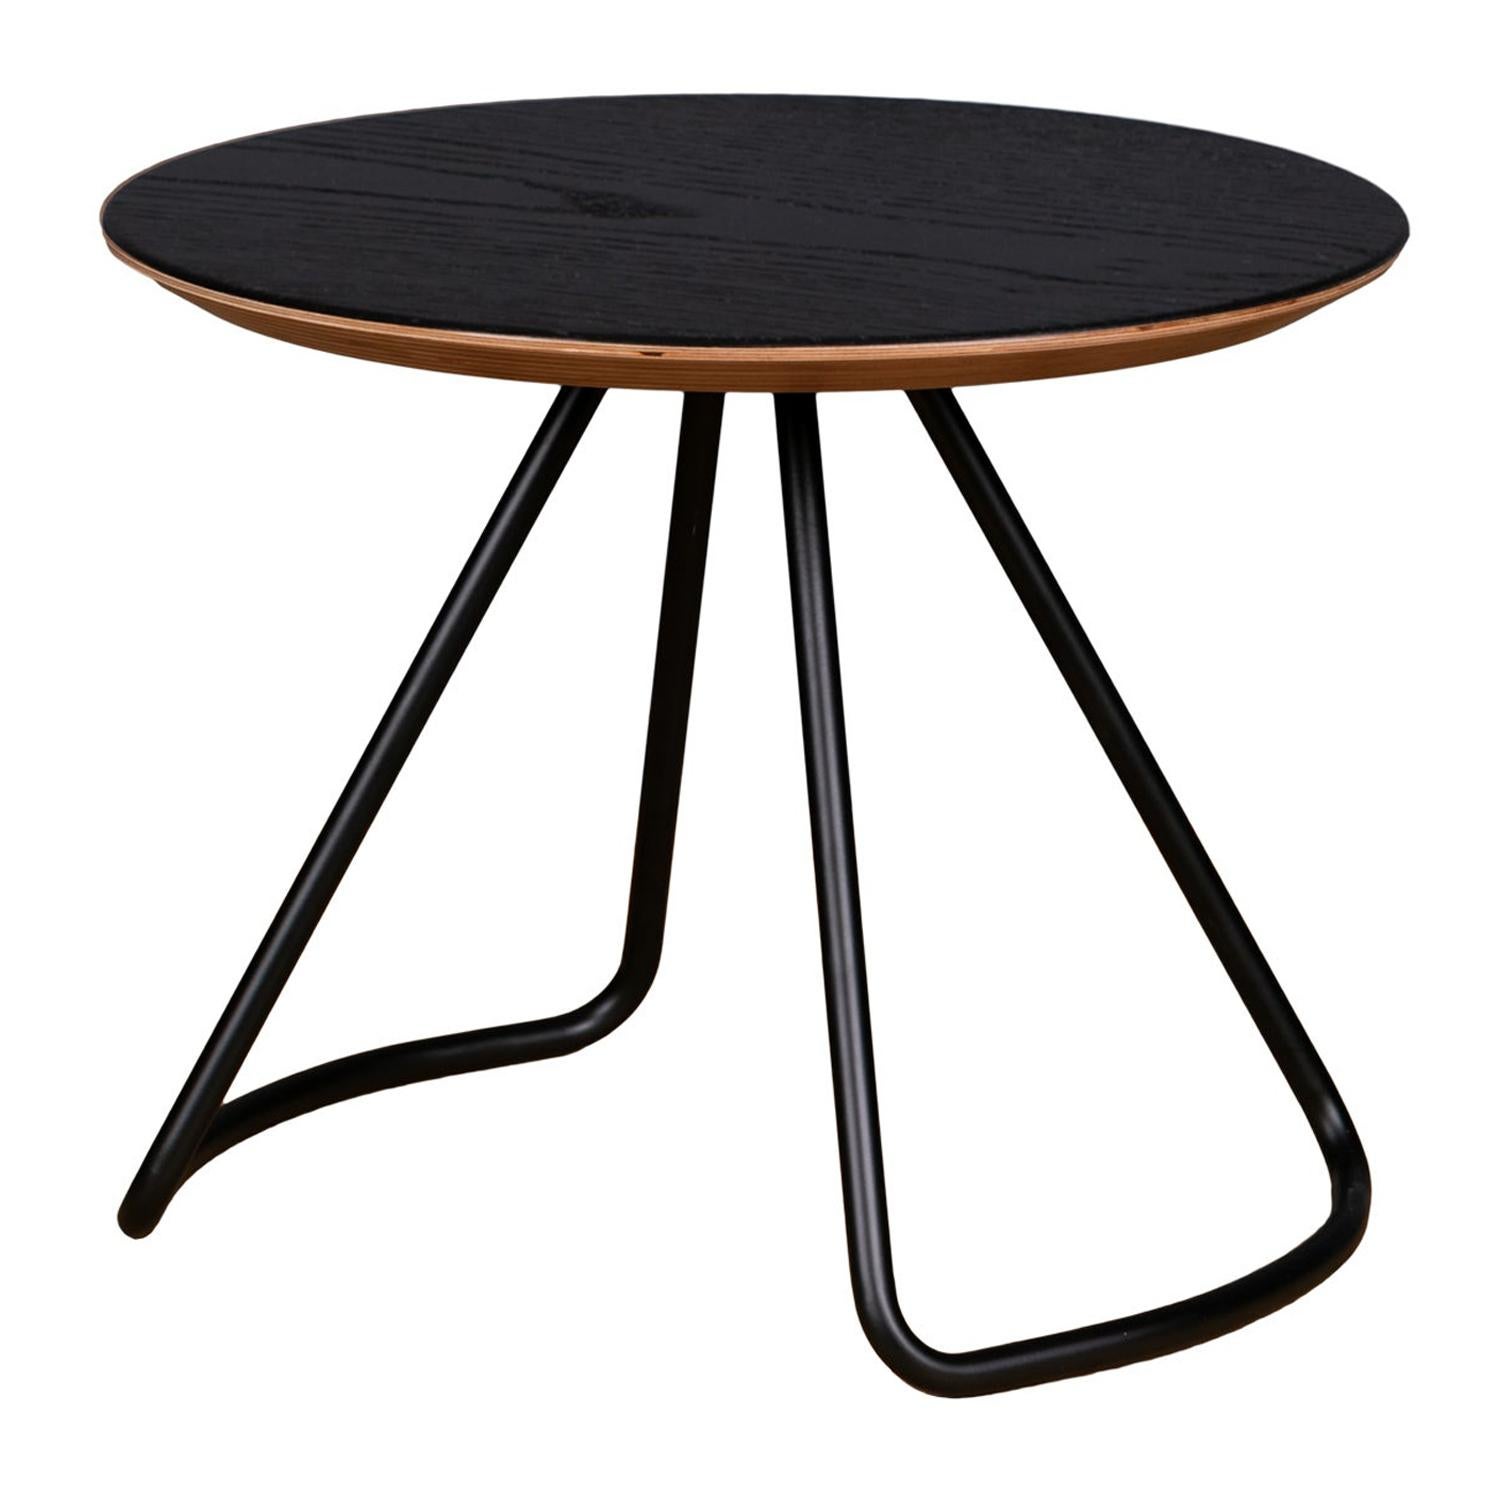 Sama Couchtisch, zeitgenössischer moderner minimalistischer Couchtisch aus schwarzer Eiche und schwarzem Metall